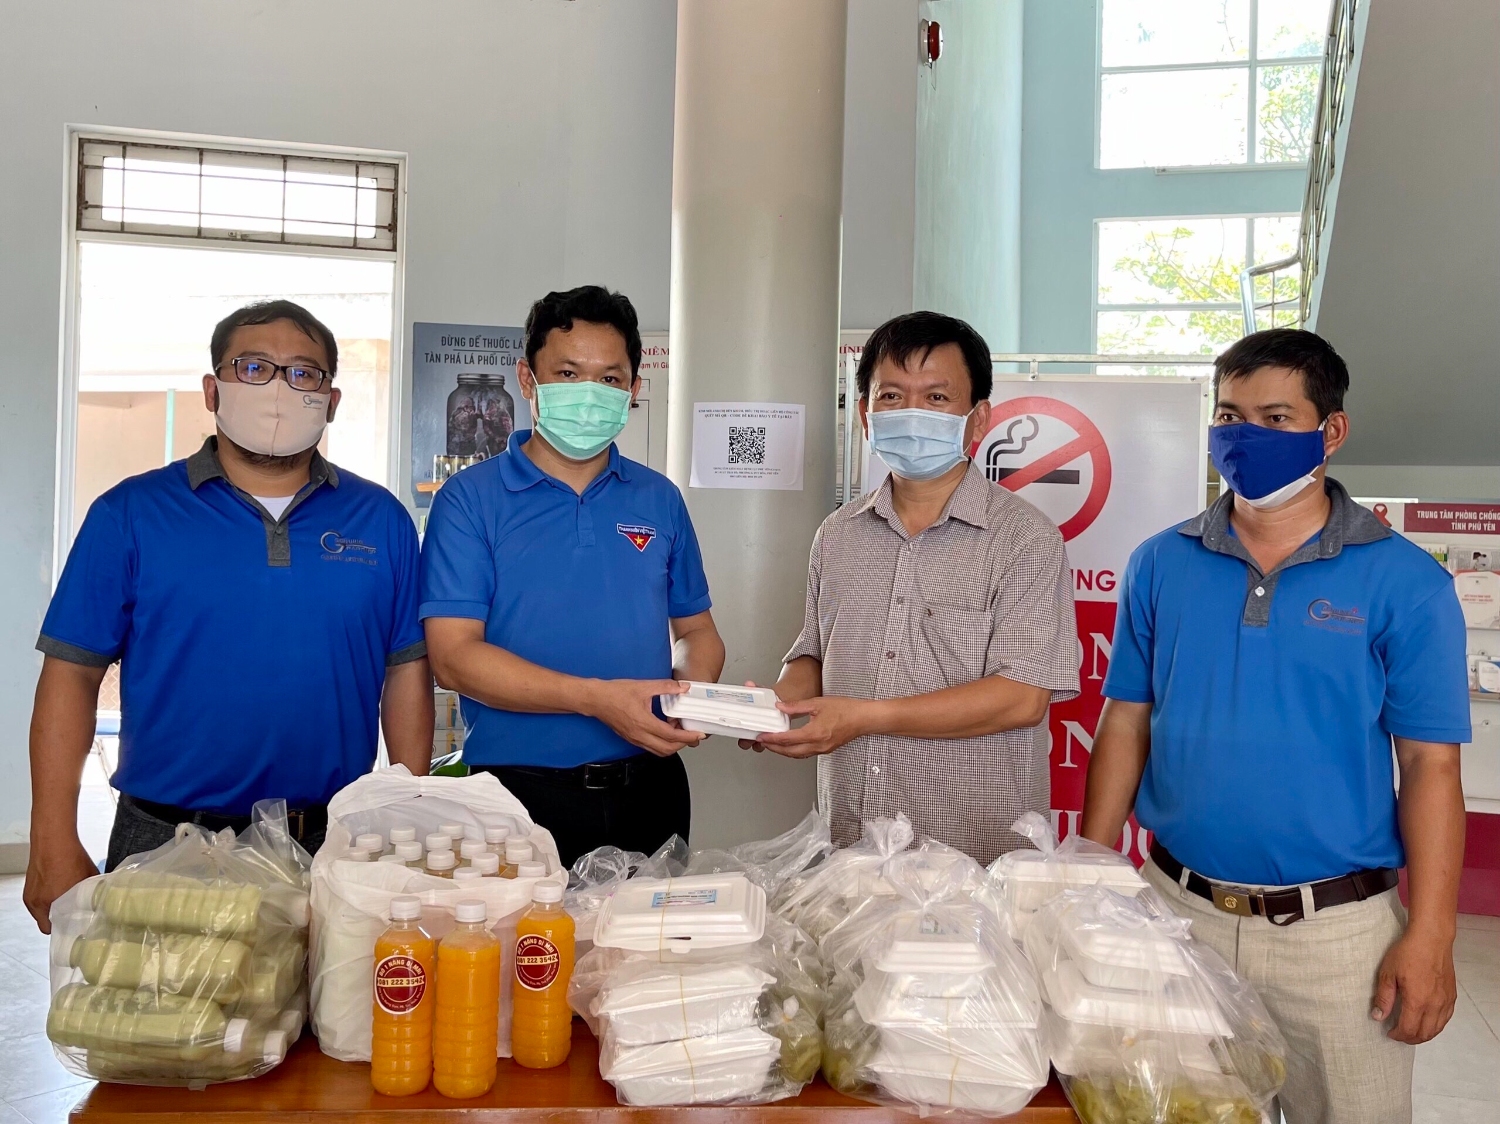 Anh Phạm Ngọc Mến (bìa phải) cùng lãnh đạo Tỉnh đoàn Phú Yên và Trung tâm Công tác xã hội Thanh thiếu niên trao tặng những suất cơm yêu thương cho Trung tâm kiểm soát bệnh tật tỉnh